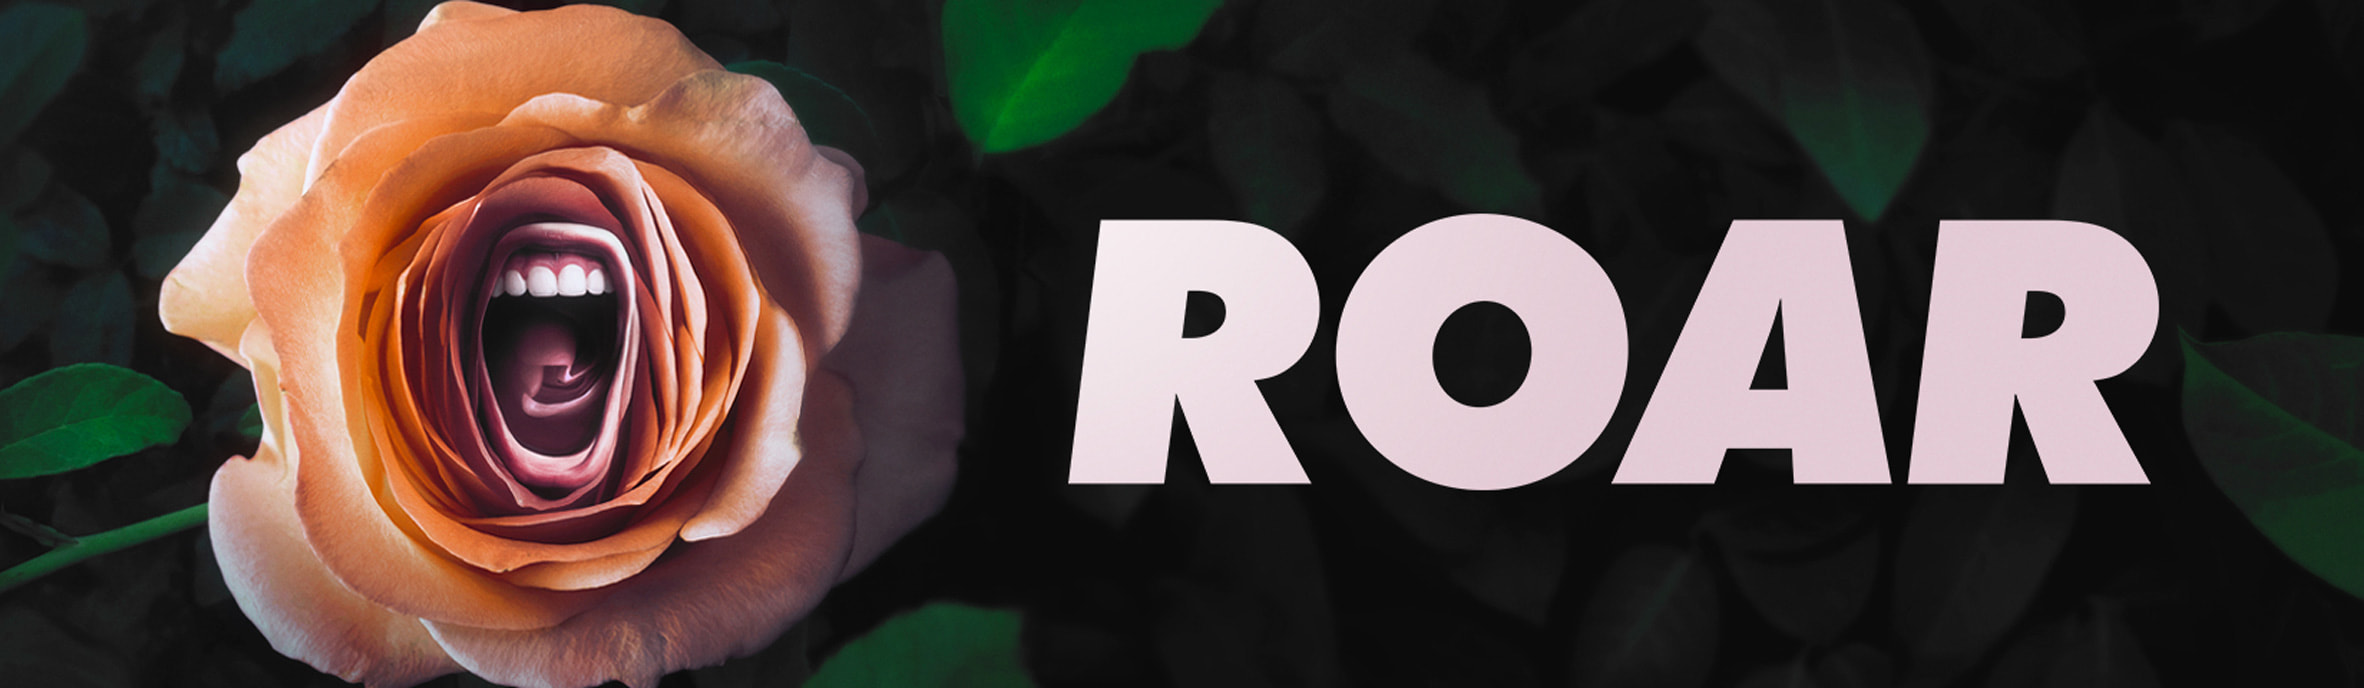 Roar — First Look  Apple TV+ 